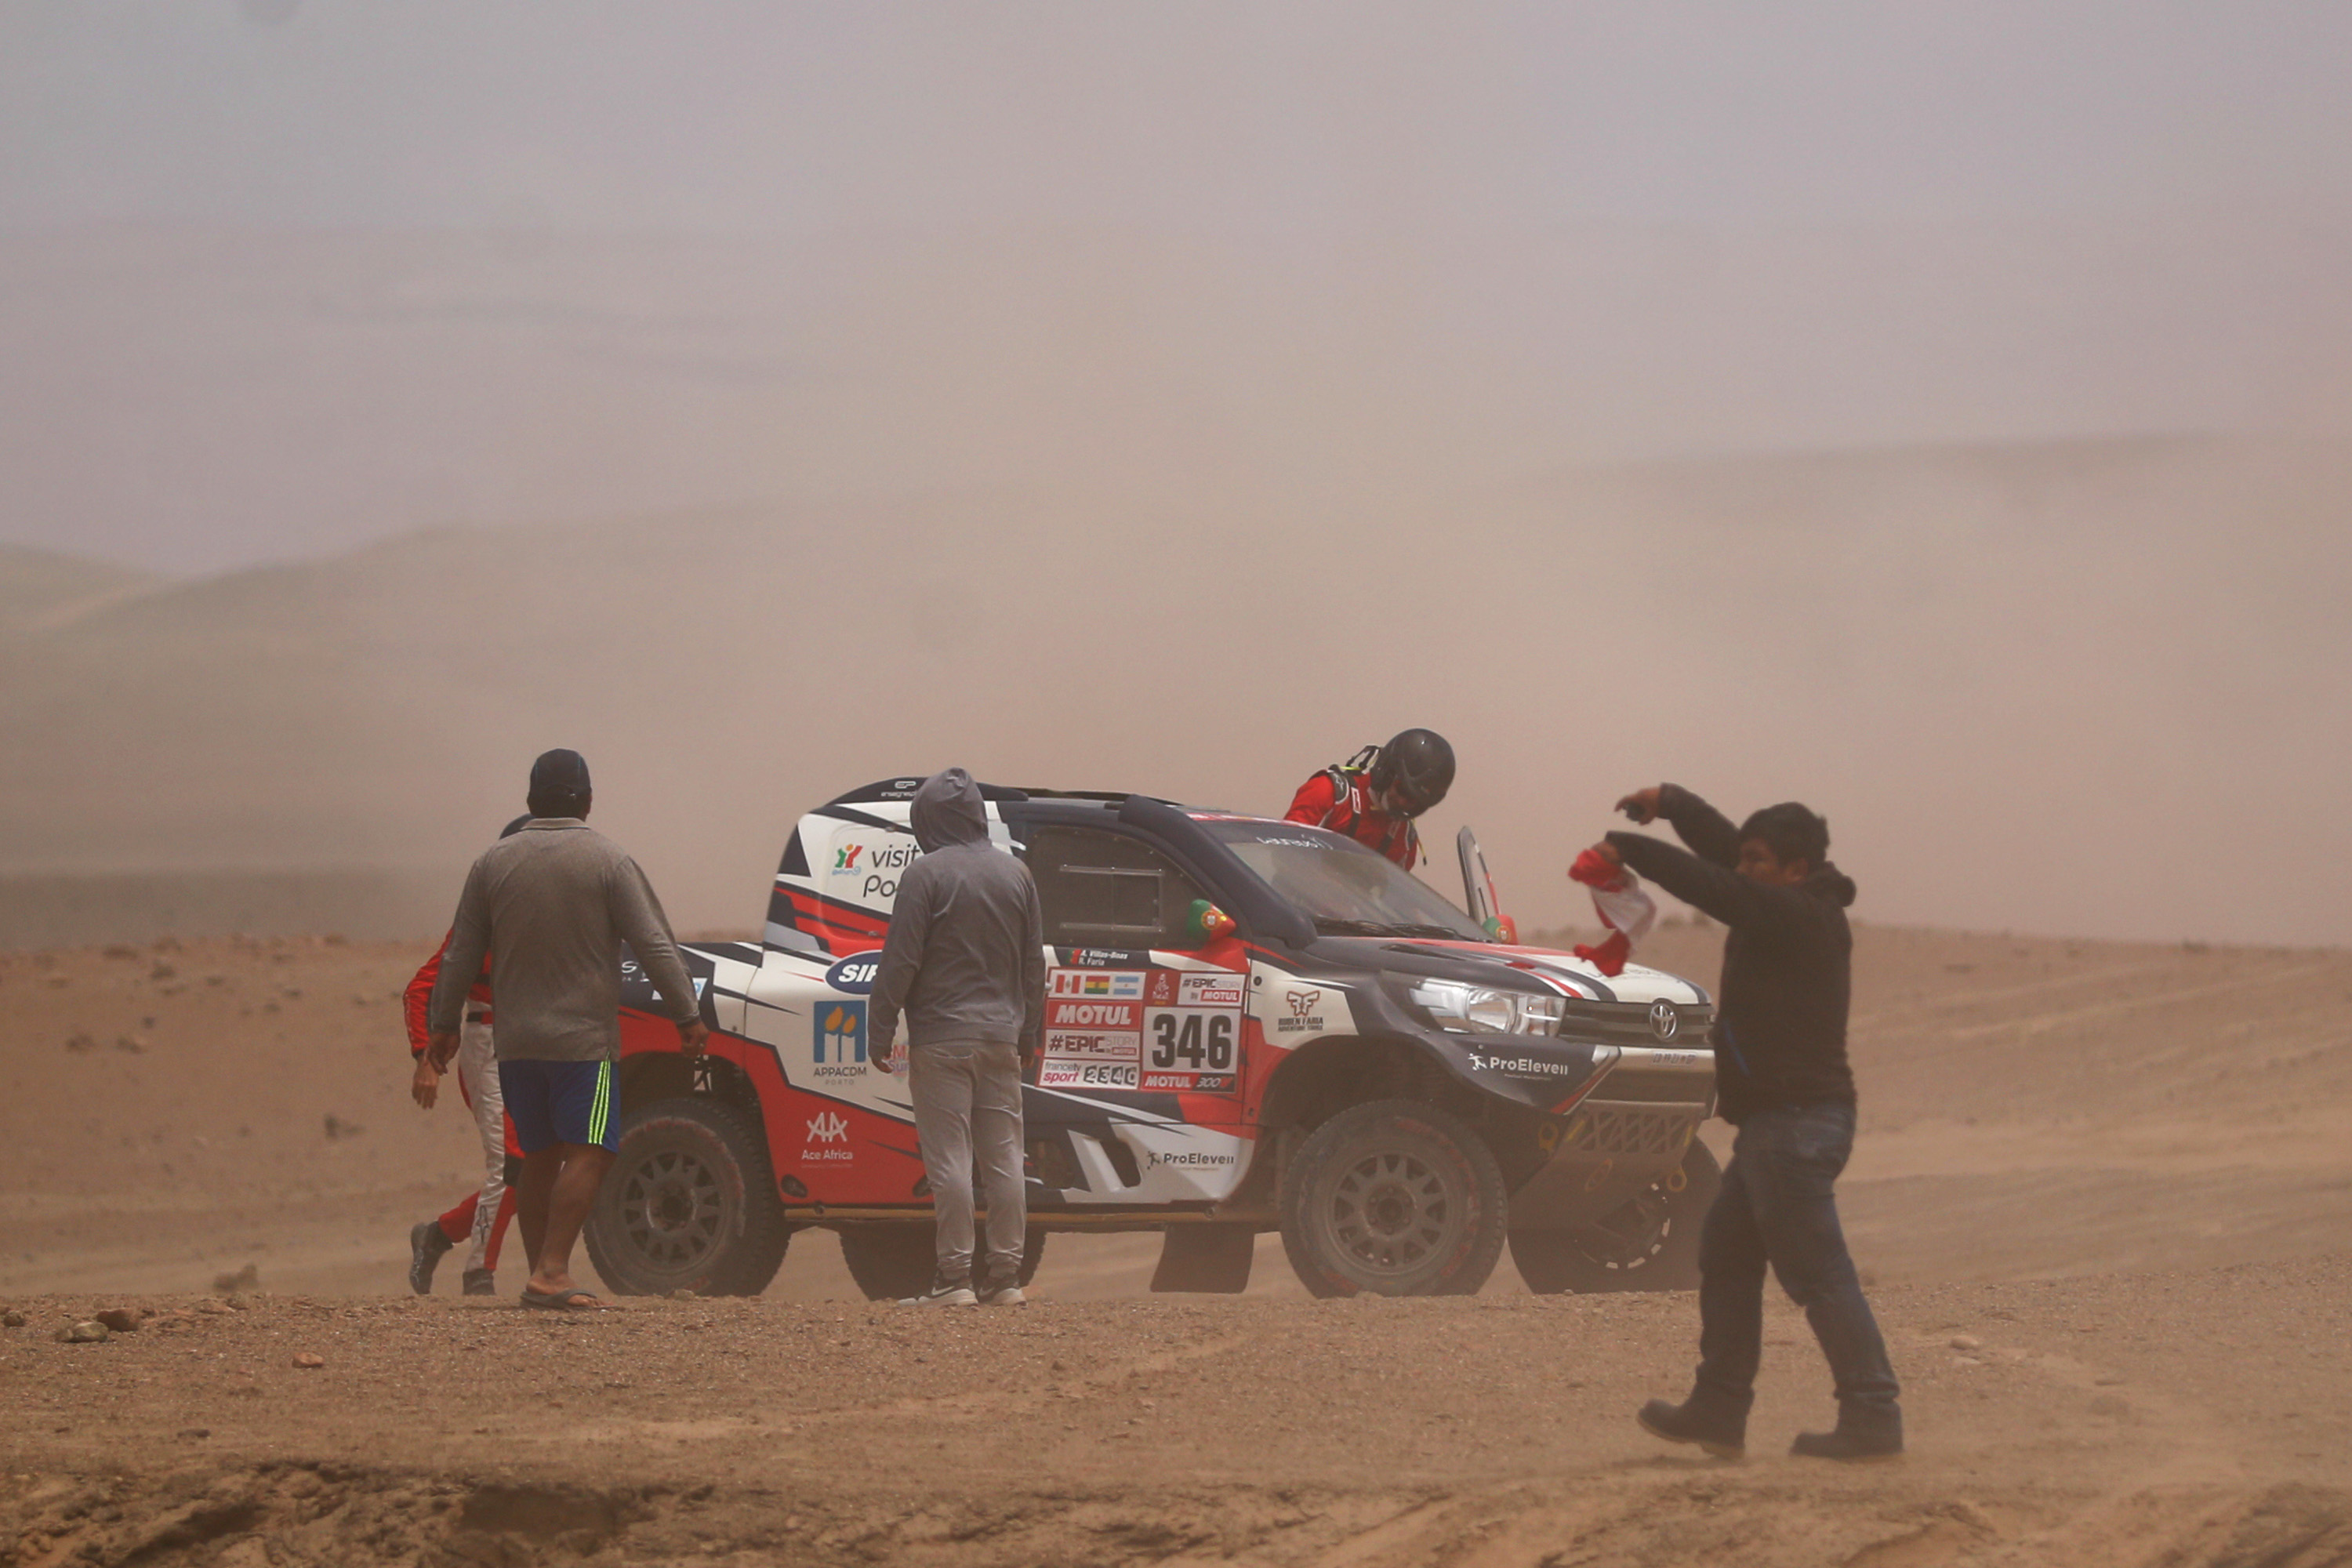 2018 Dakar Rally - Day Four